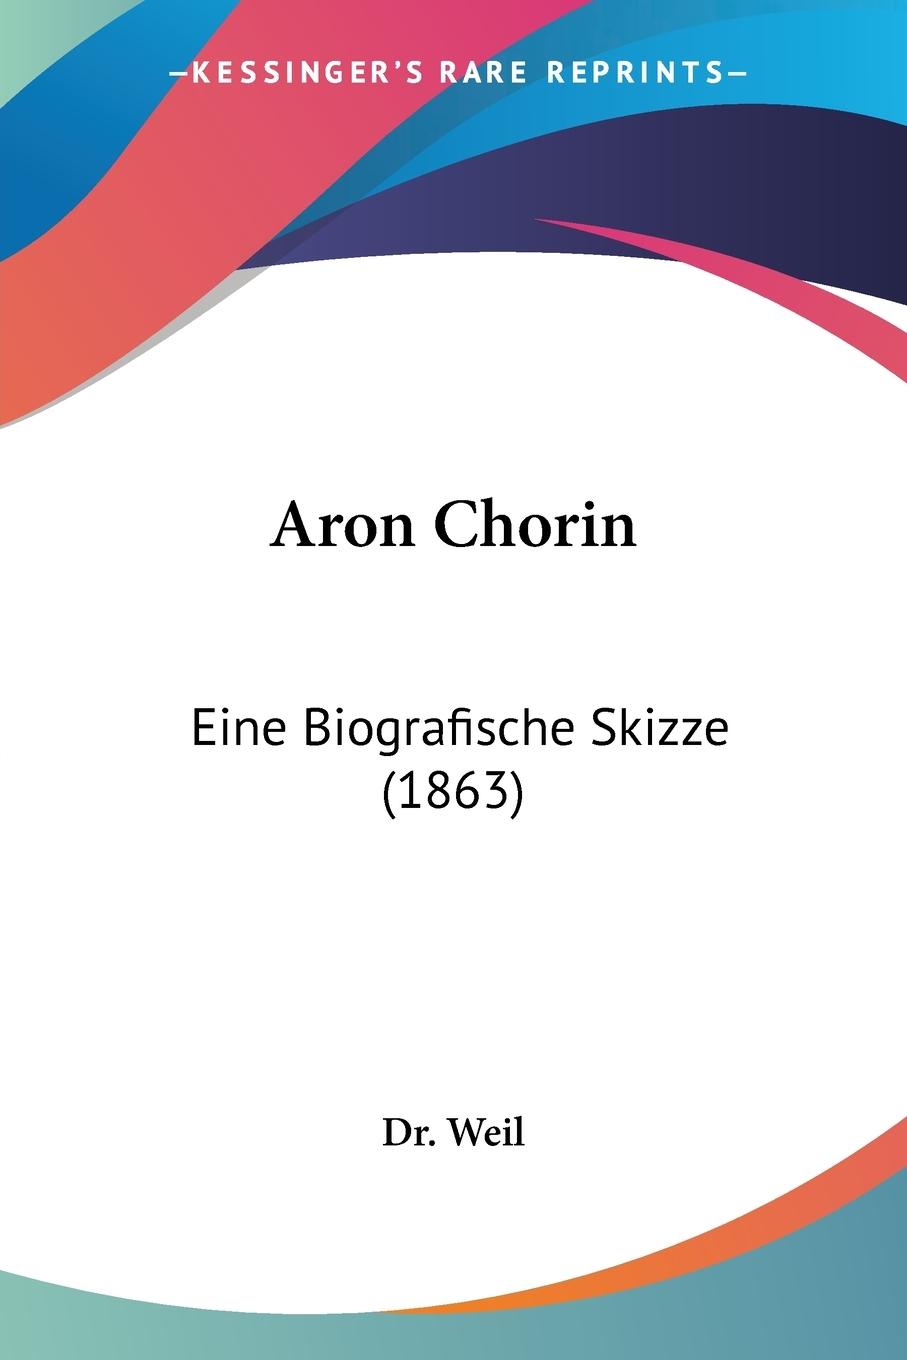 Aron Chorin - Weil